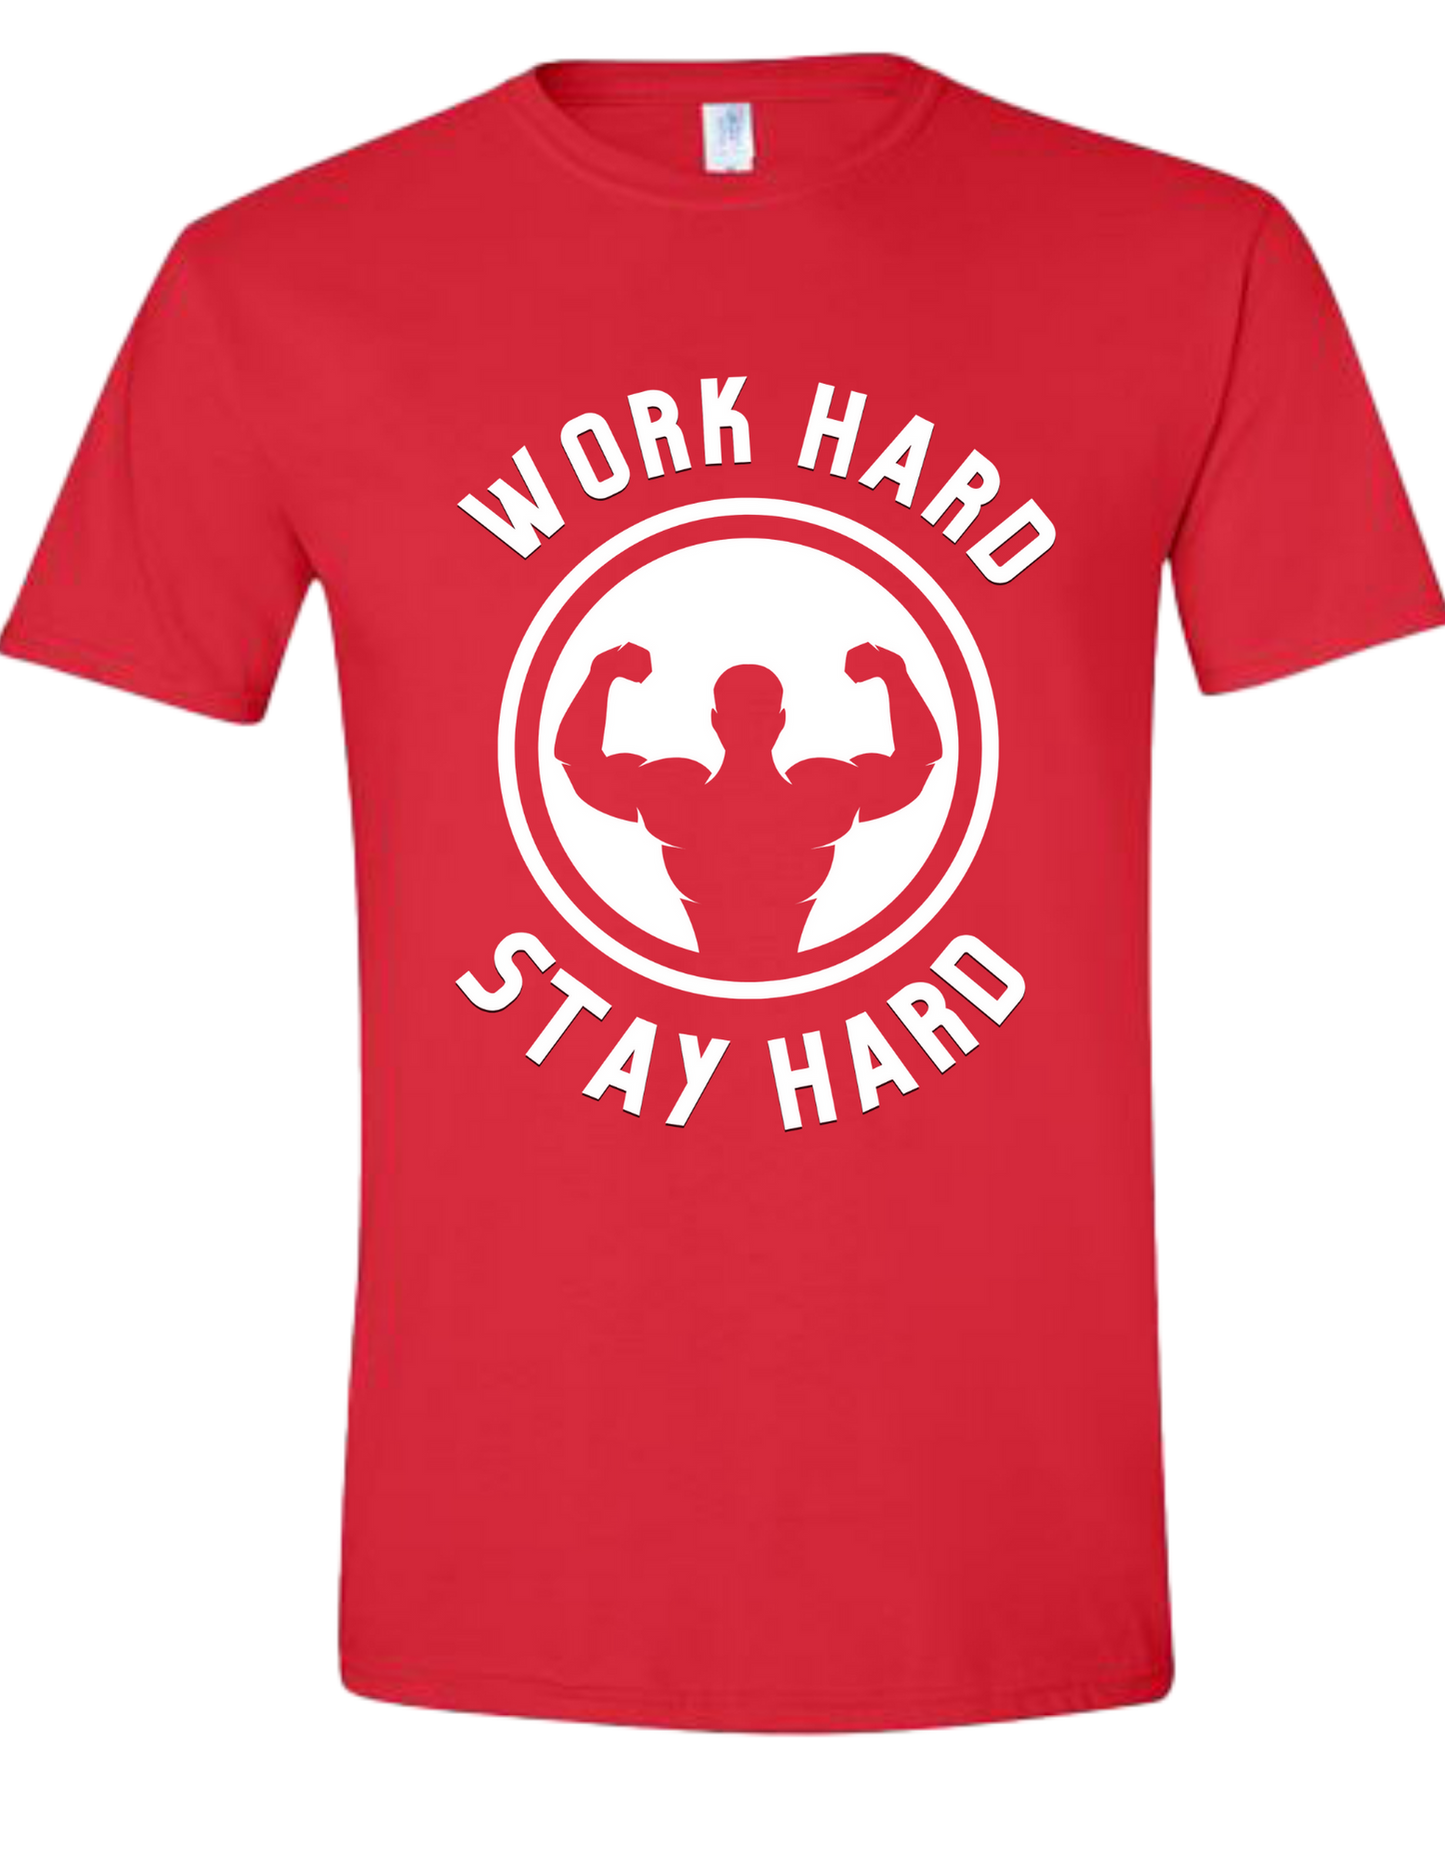 Work Hard Stay Hard -